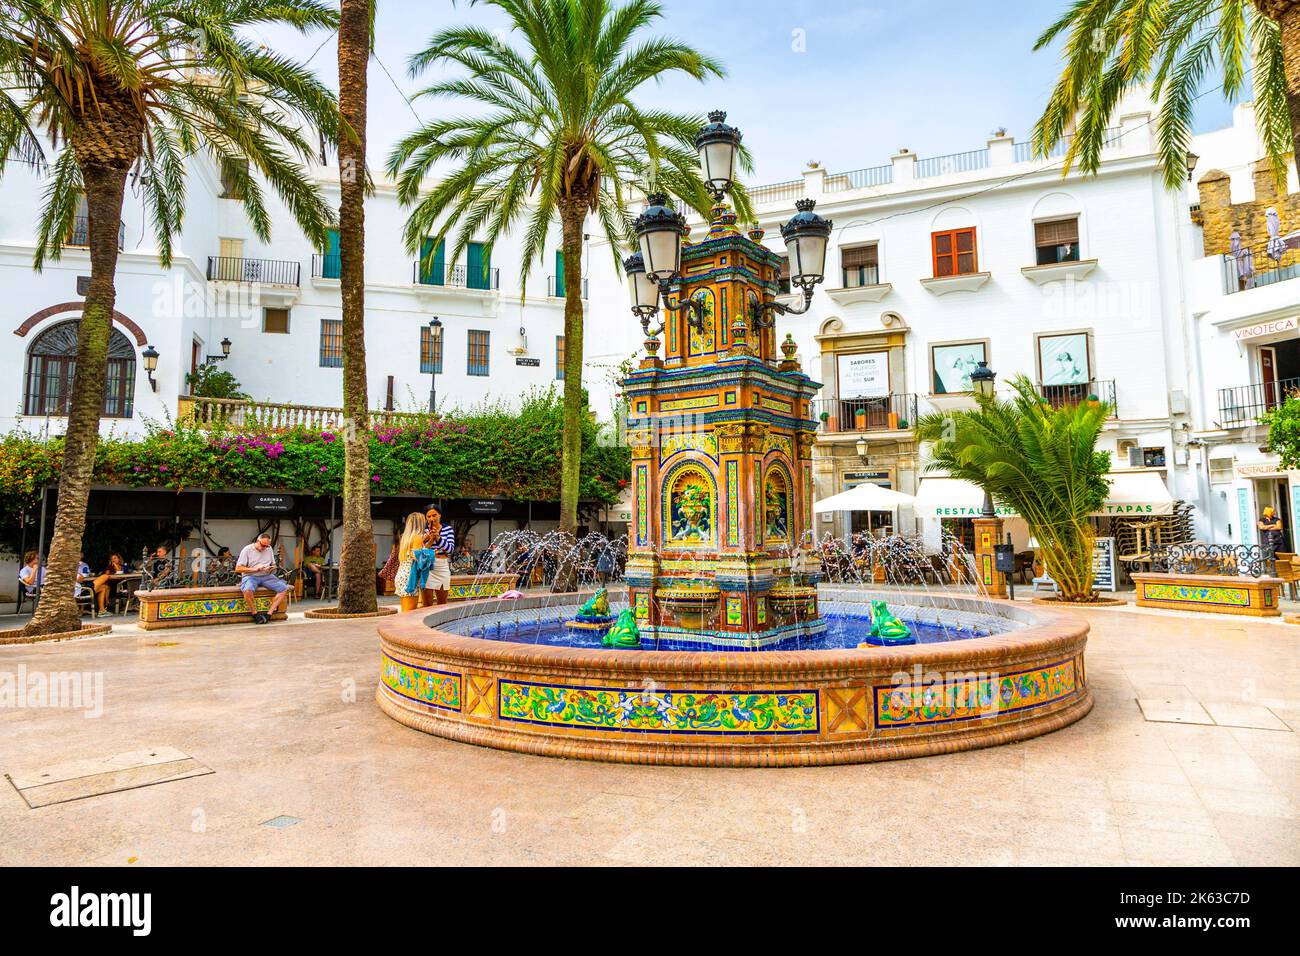 Colourful mosaic fountain at Plaza de Espana, Vejer de la Frontera, Andalusia, Spain Stock Photo